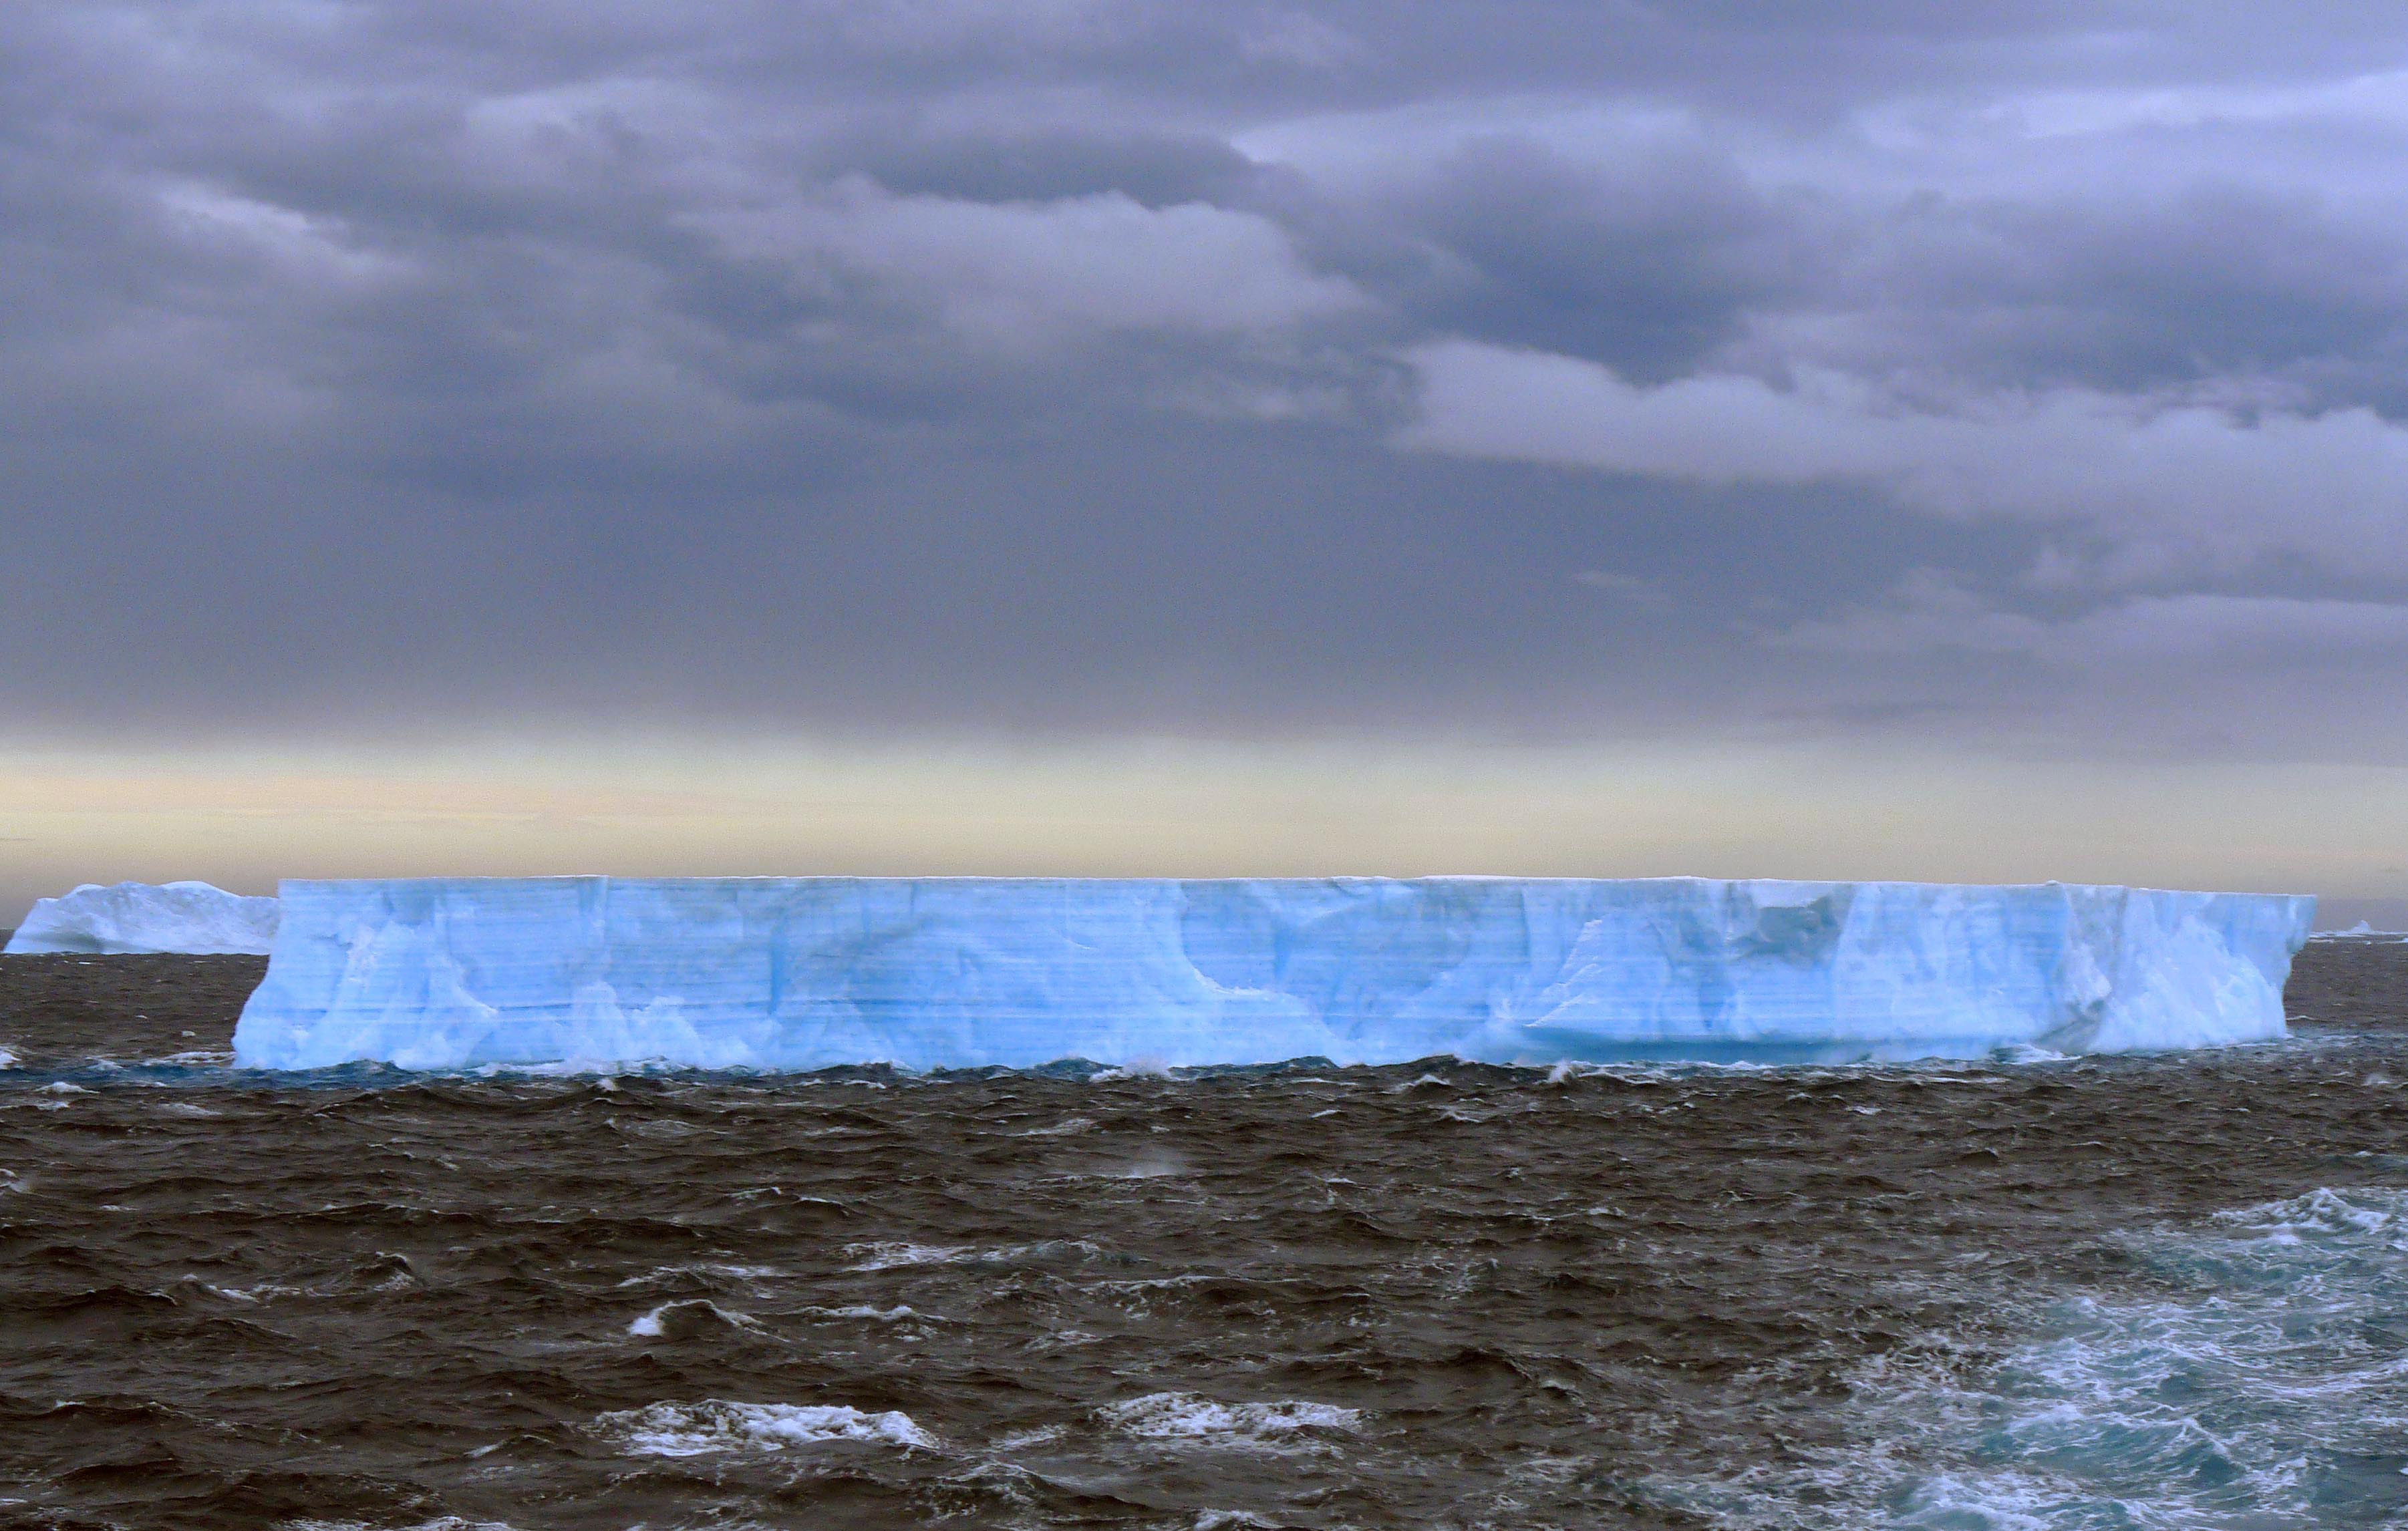 La fonte des glaciers en Arctique inquiète mais la situation est également préoccupante en Antarctique. On voit ici un iceberg tabulaire. Il est de forme plate, avec une longueur supérieure à cinq fois sa hauteur. Les tabulaires sont caractéristiques de la zone antarctique et de ses nombreuses « barrières de glace », certaines longues de plusieurs kilomètres. Elles dérivent dans l’océan austral au gré des vents et des courants. © cc by sa 2.0, Michael Clarke, Wikipédia